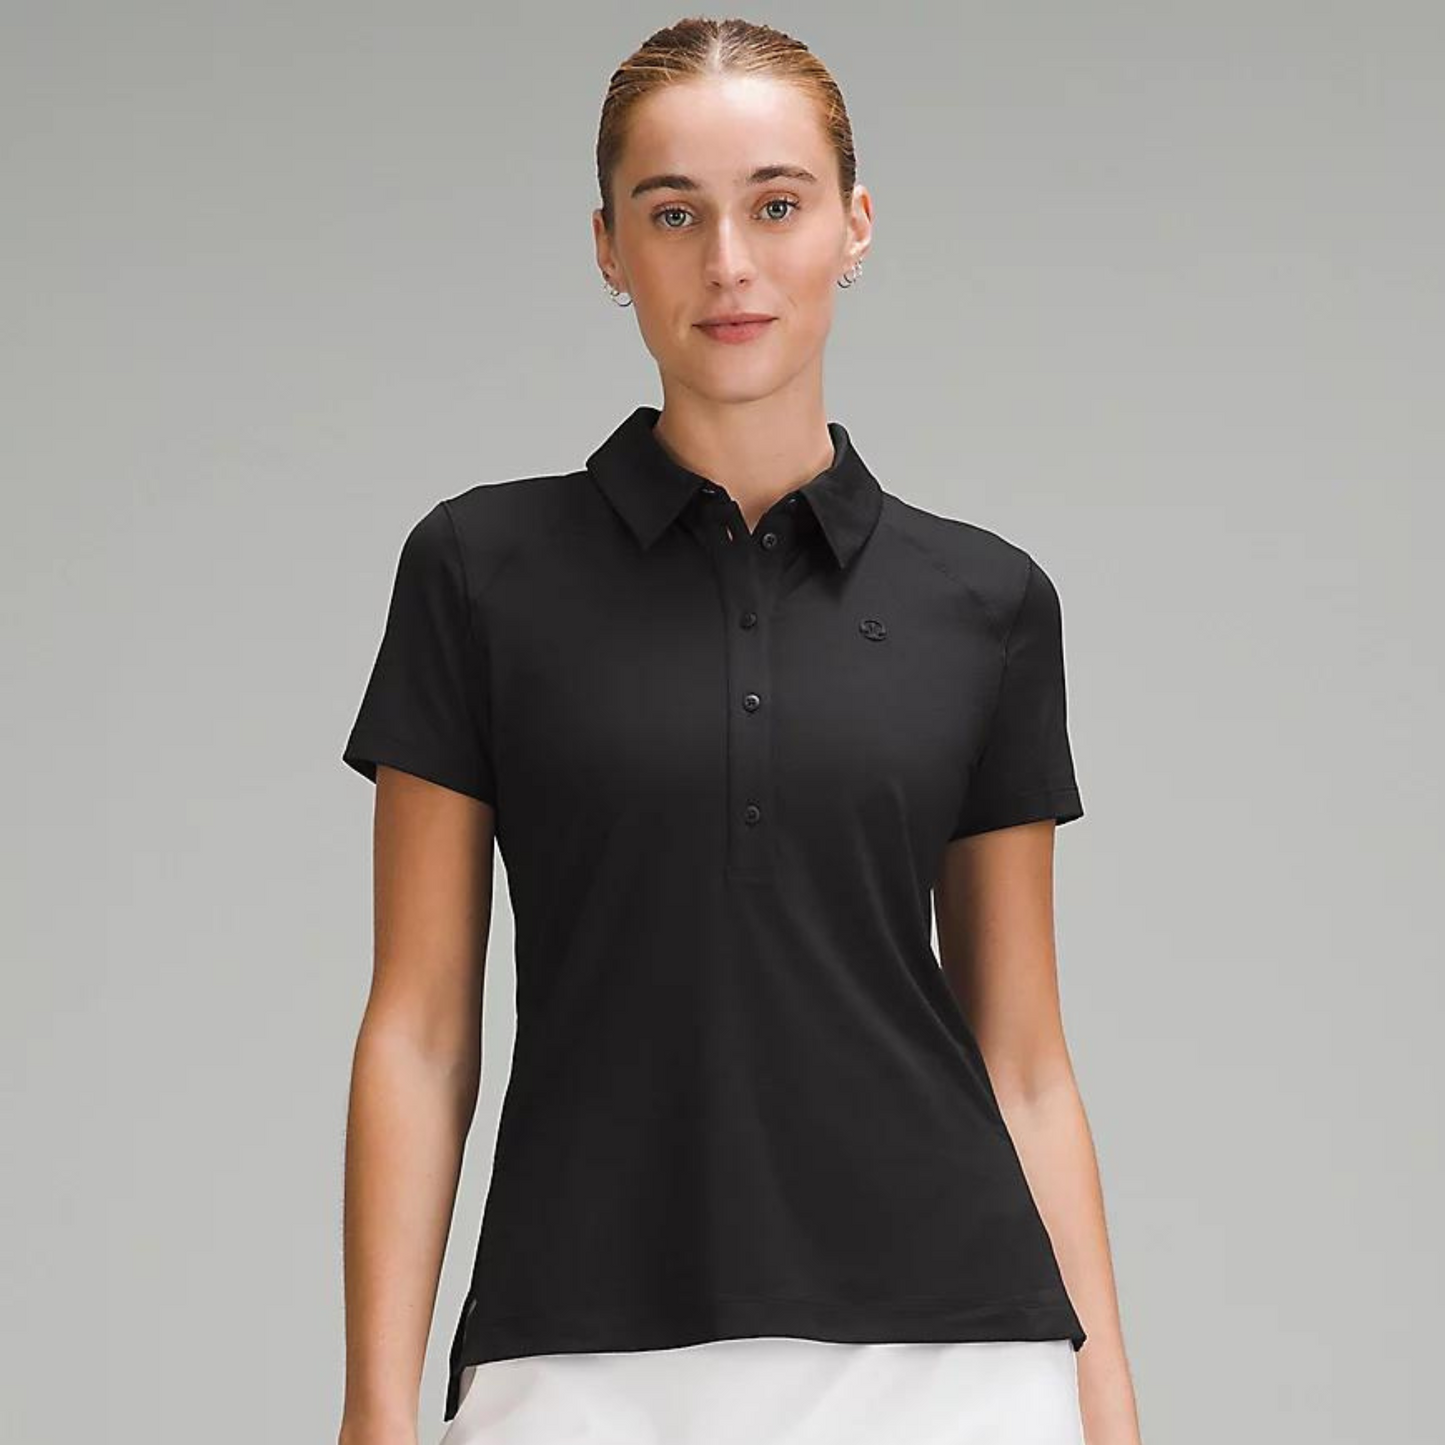 lululemon -  Quick-Dry Short-Sleeve Polo Shirt - Black